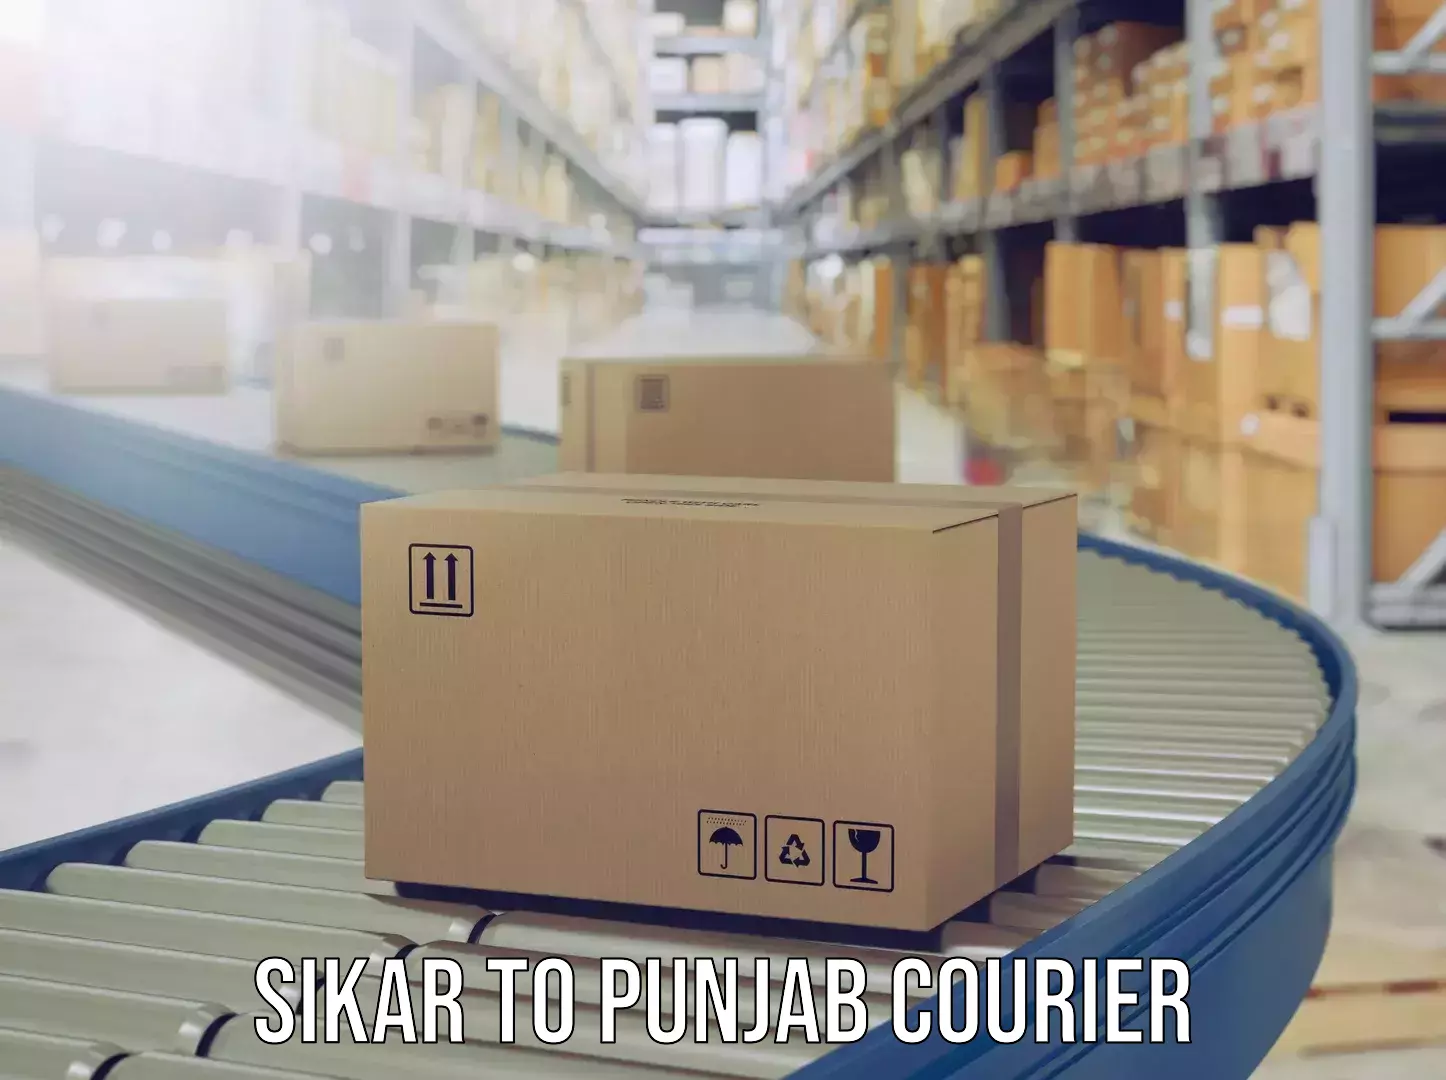 Luggage shipping planner Sikar to Punjab